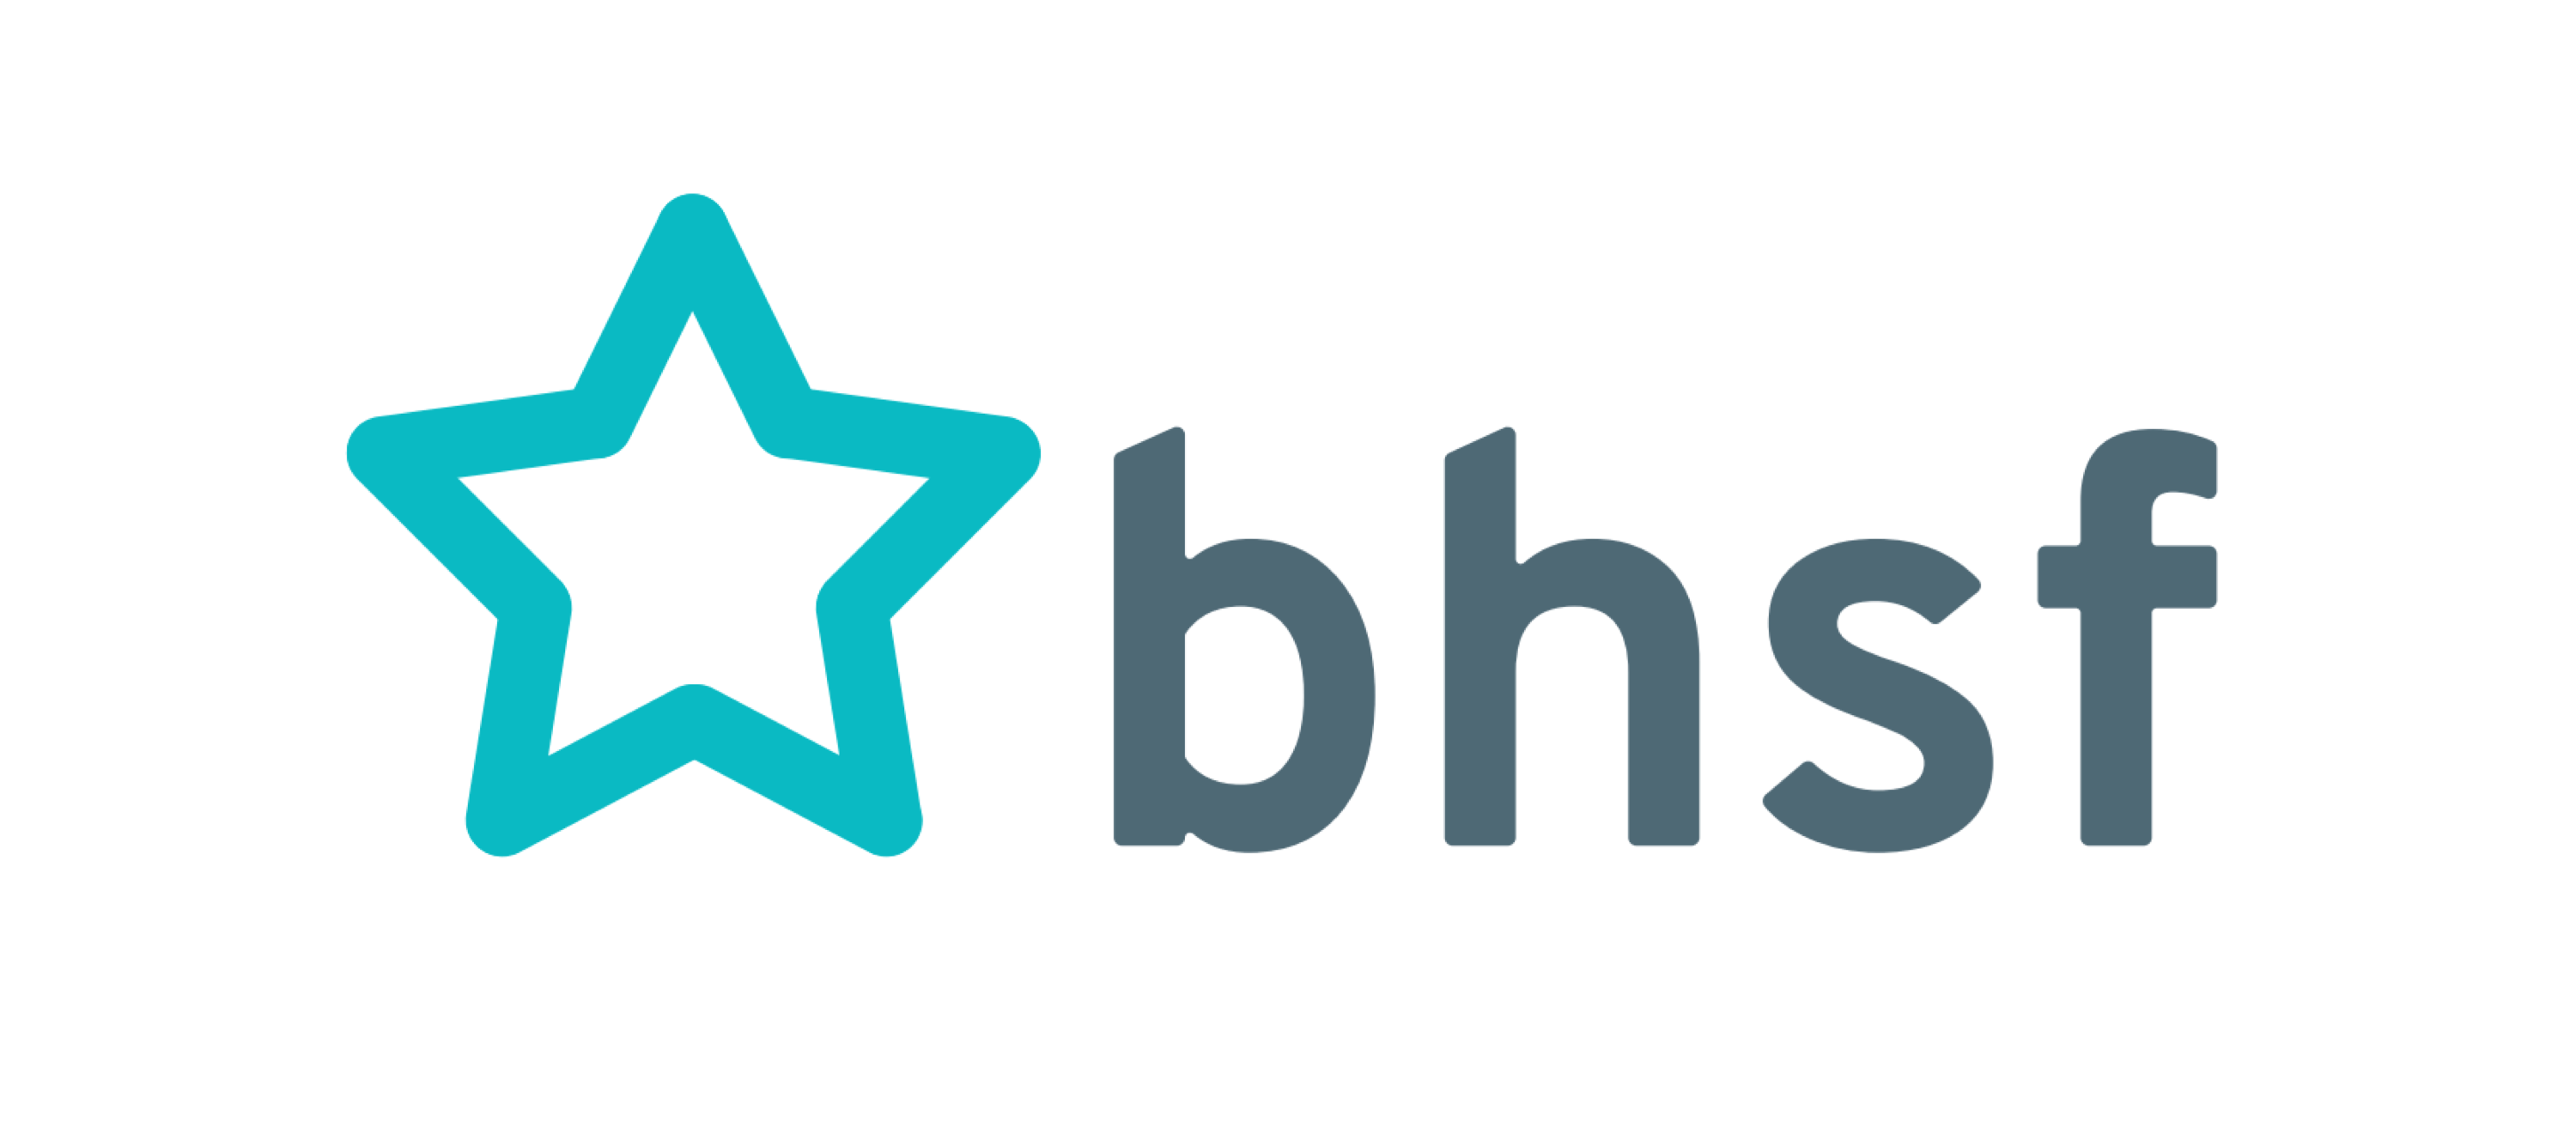 bhsf logo